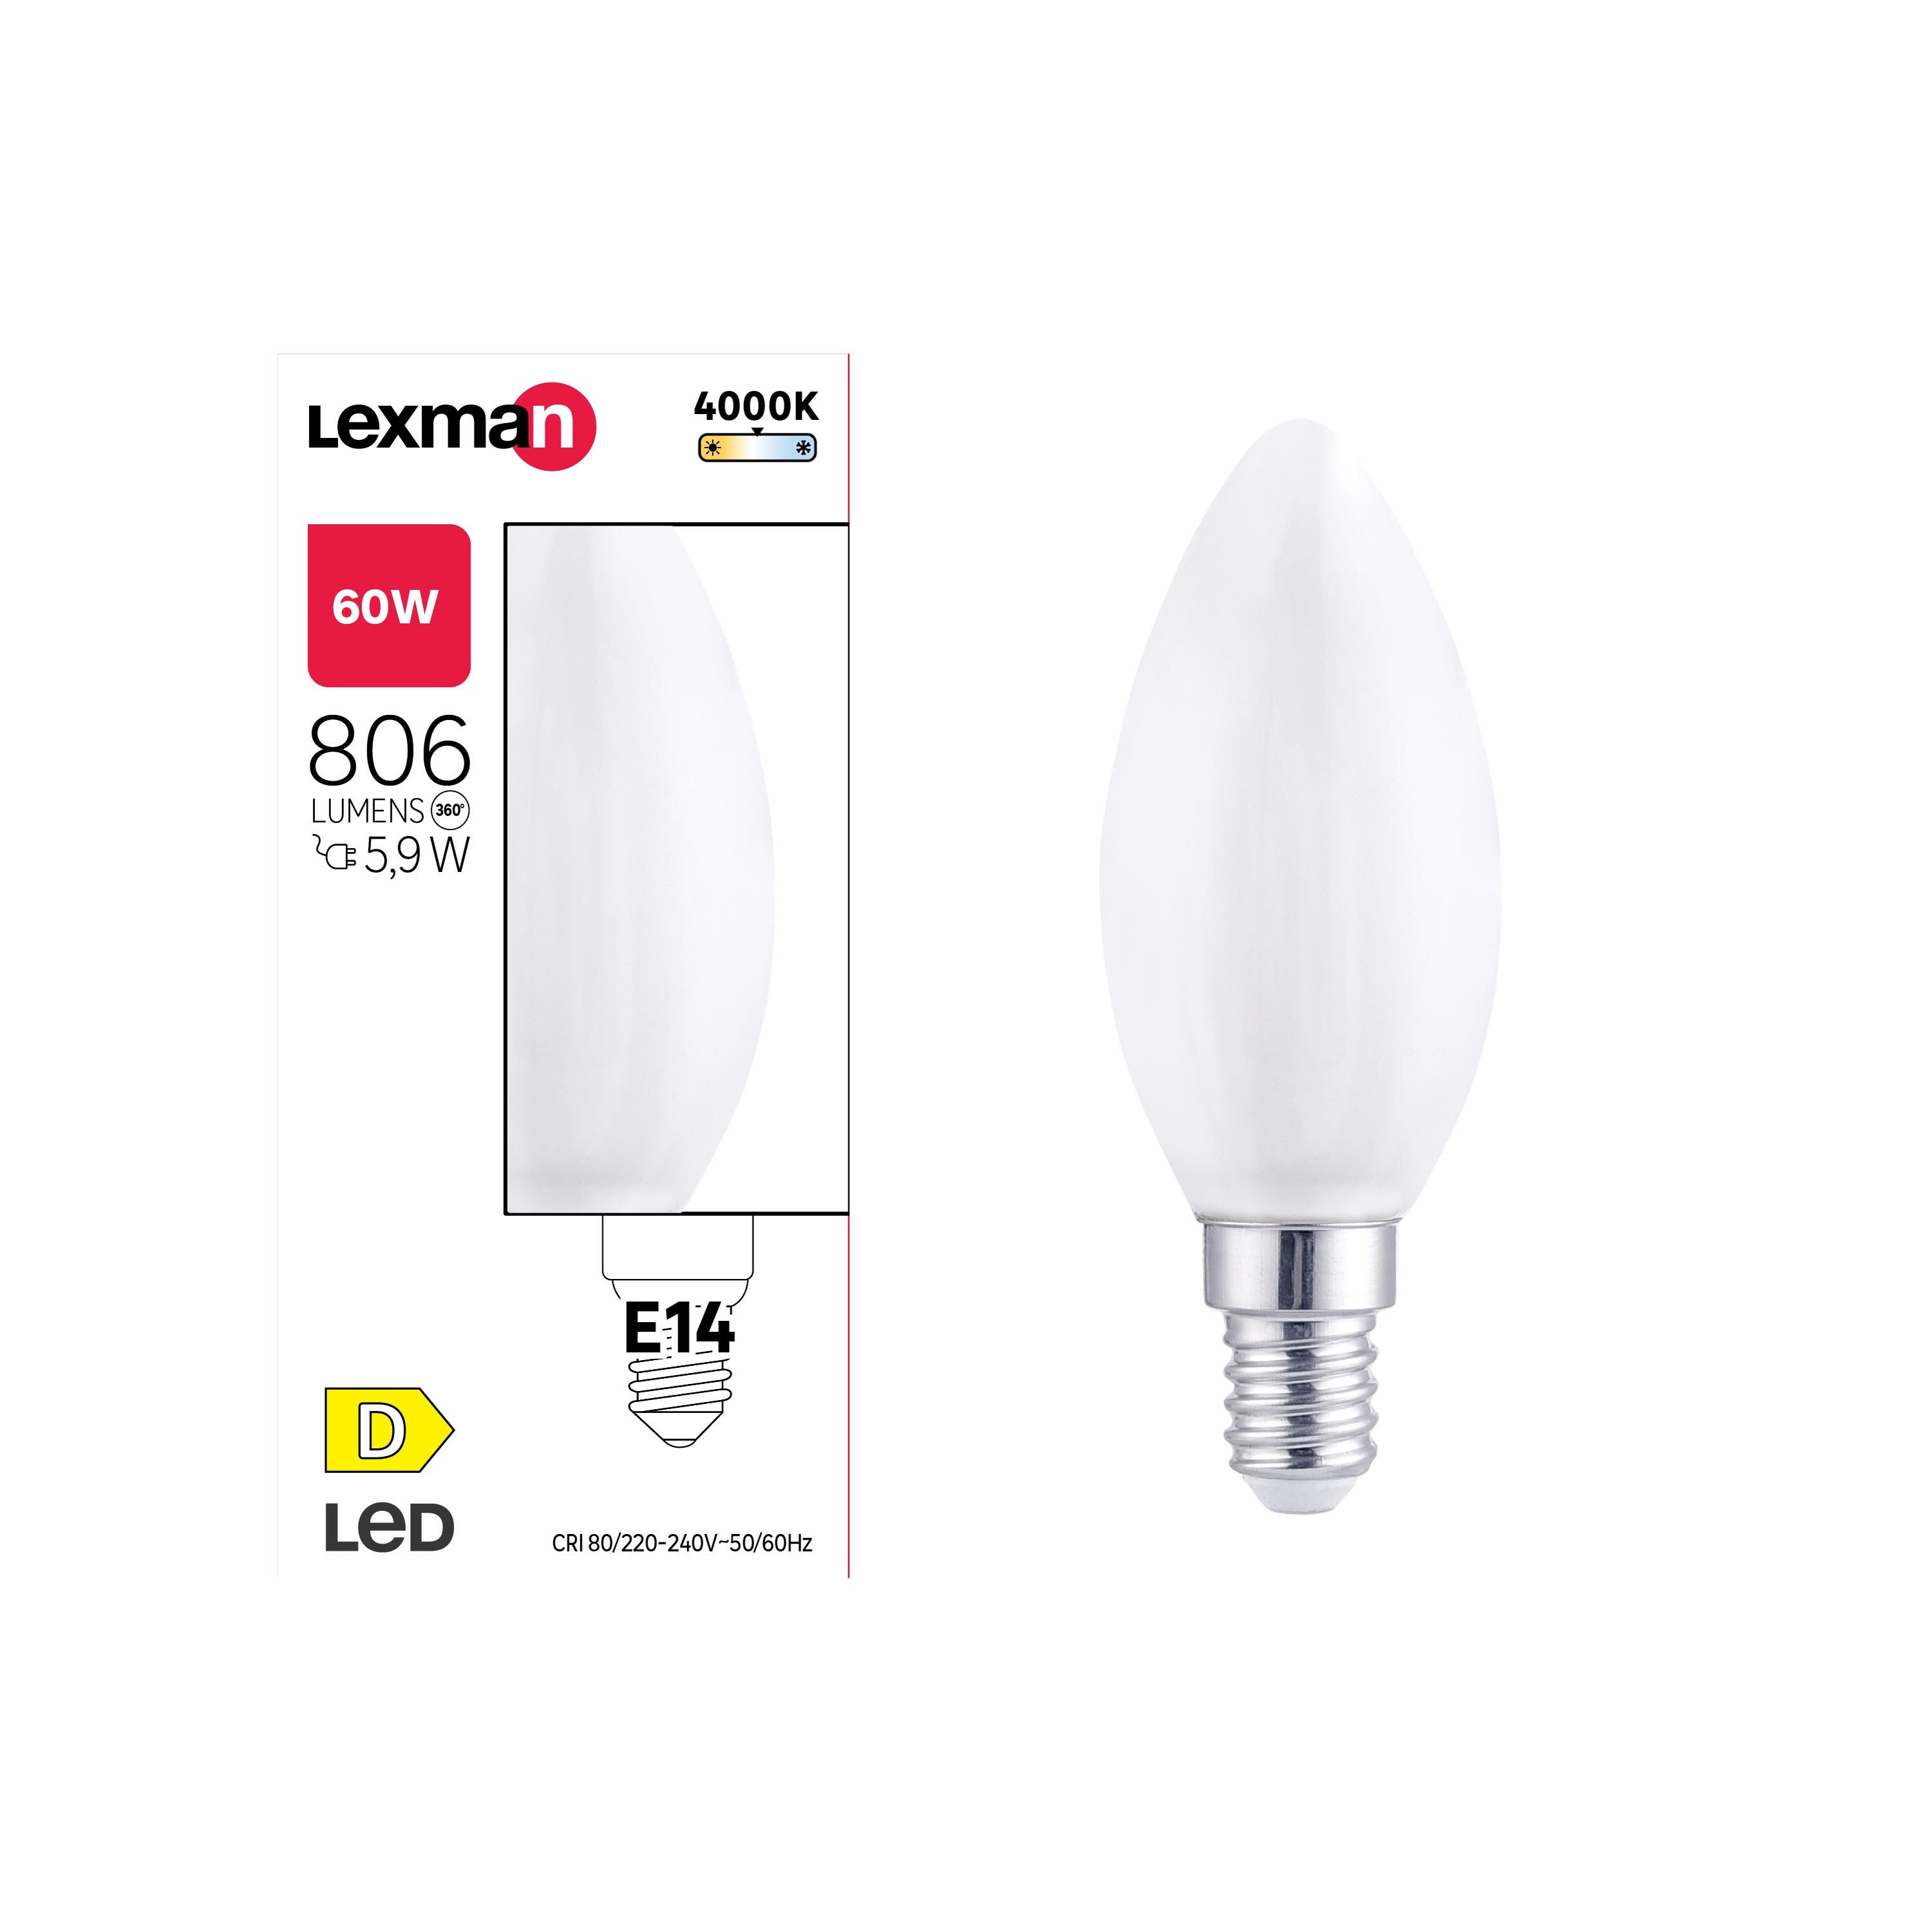 Lot 10 ampoules LED filament à flamme, culot E14, blanc neutre